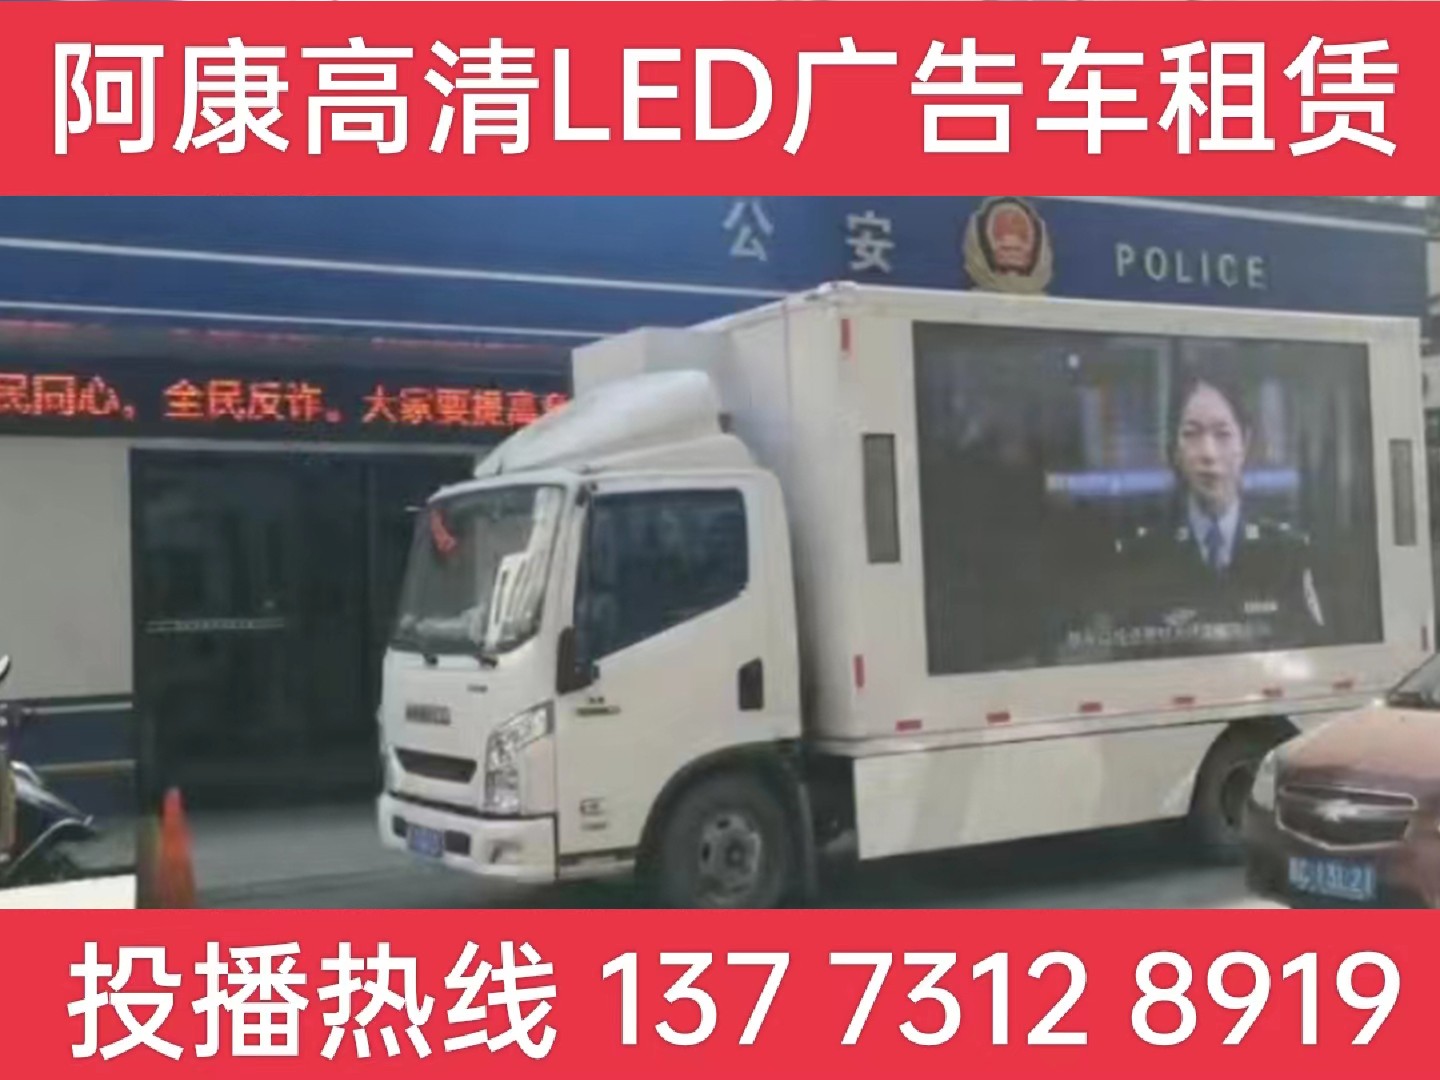 六合区LED广告车租赁-反诈宣传